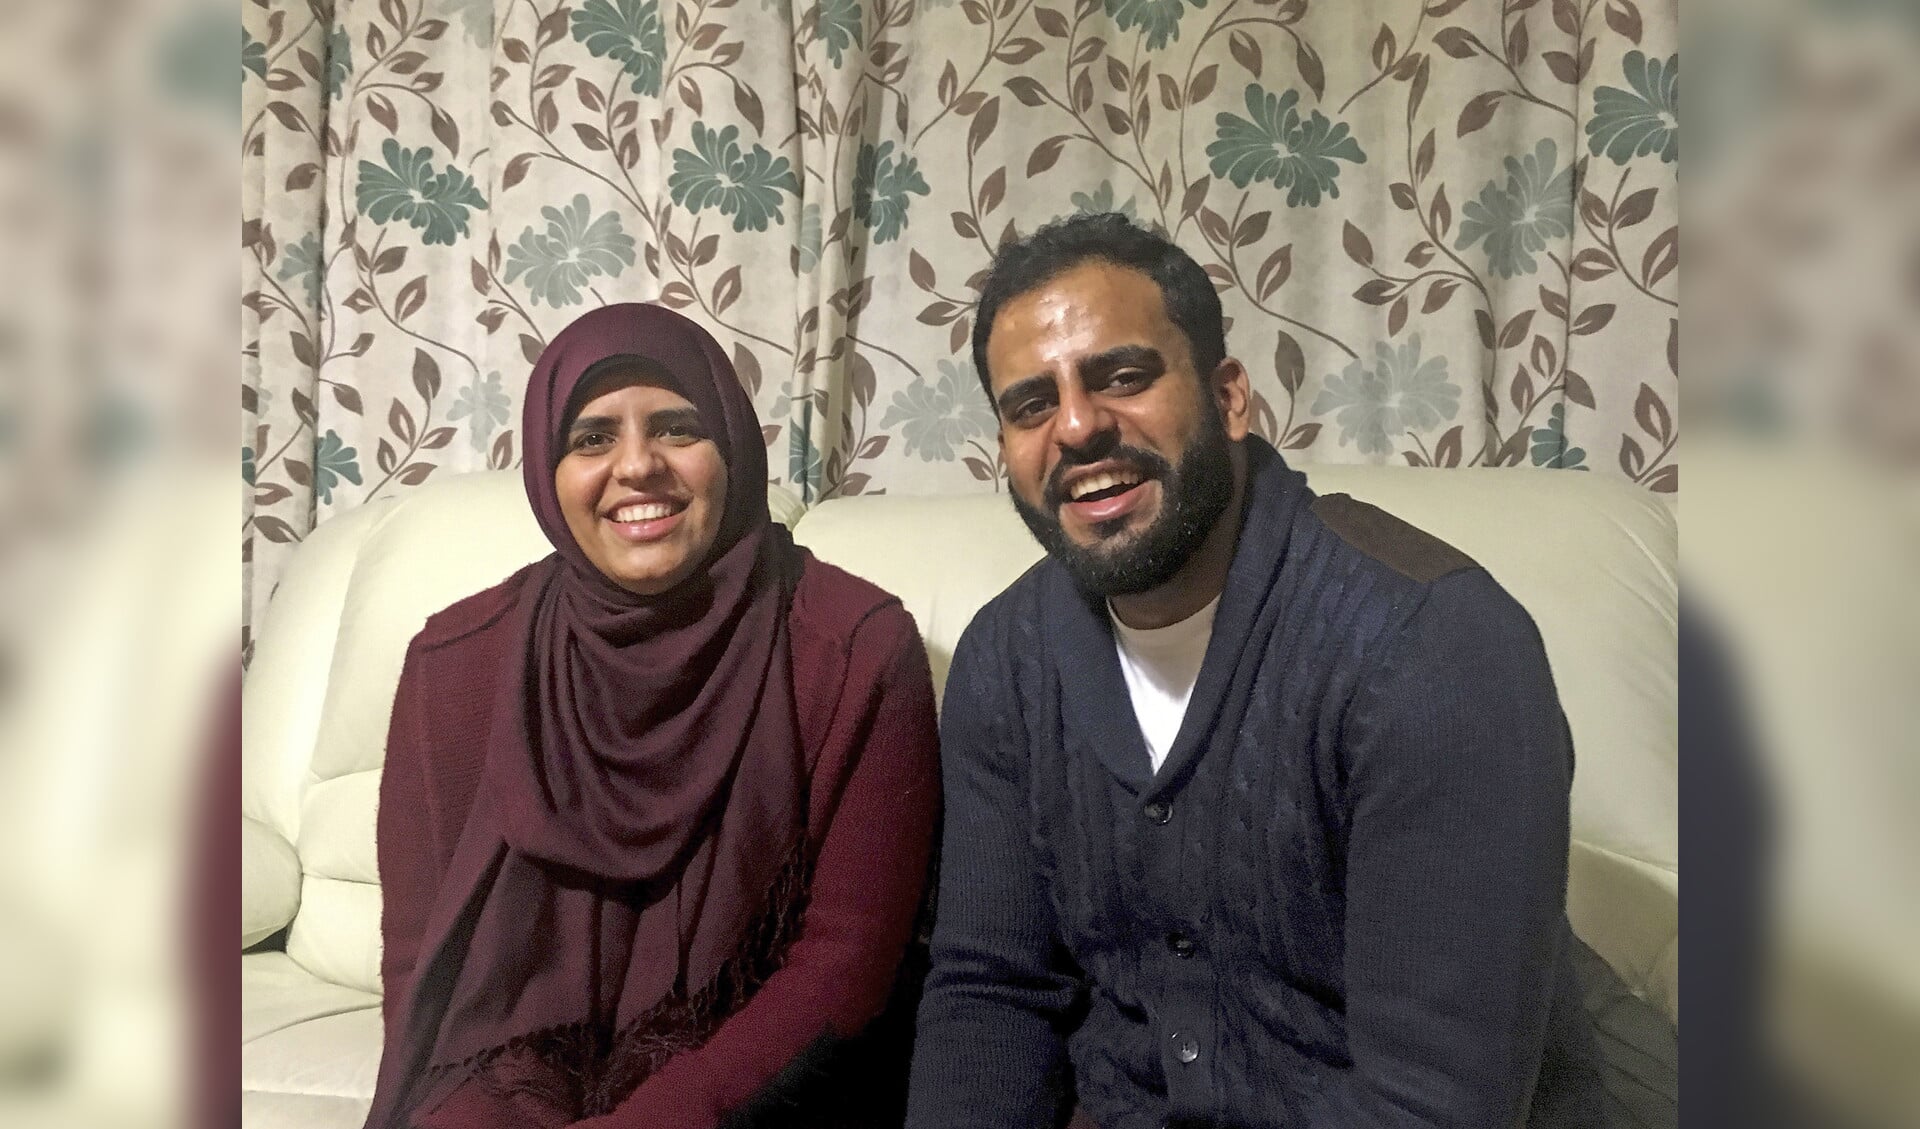 De Ierse staatsburger Ibrahim Halawa kwam in november vrij, na vier jaar detentie in Egyptische gevangenissen. Op de foto poseert hij met zijn zus Fatima Halawa, thuis in Dublin.